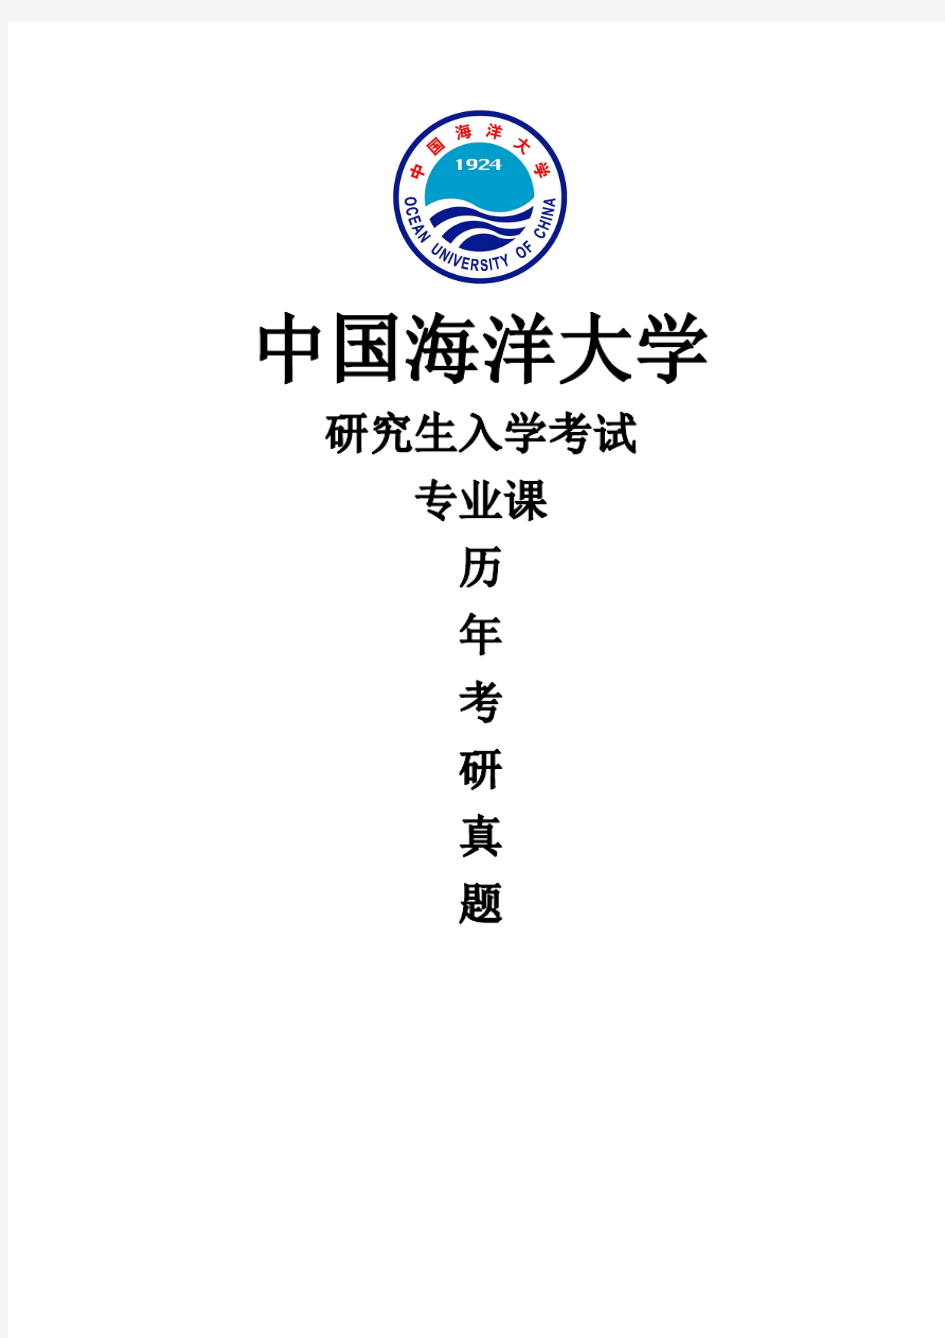 中国海洋大学《445汉语国际教育基础》(2020-2018)[官方-完整版]历年考研真题